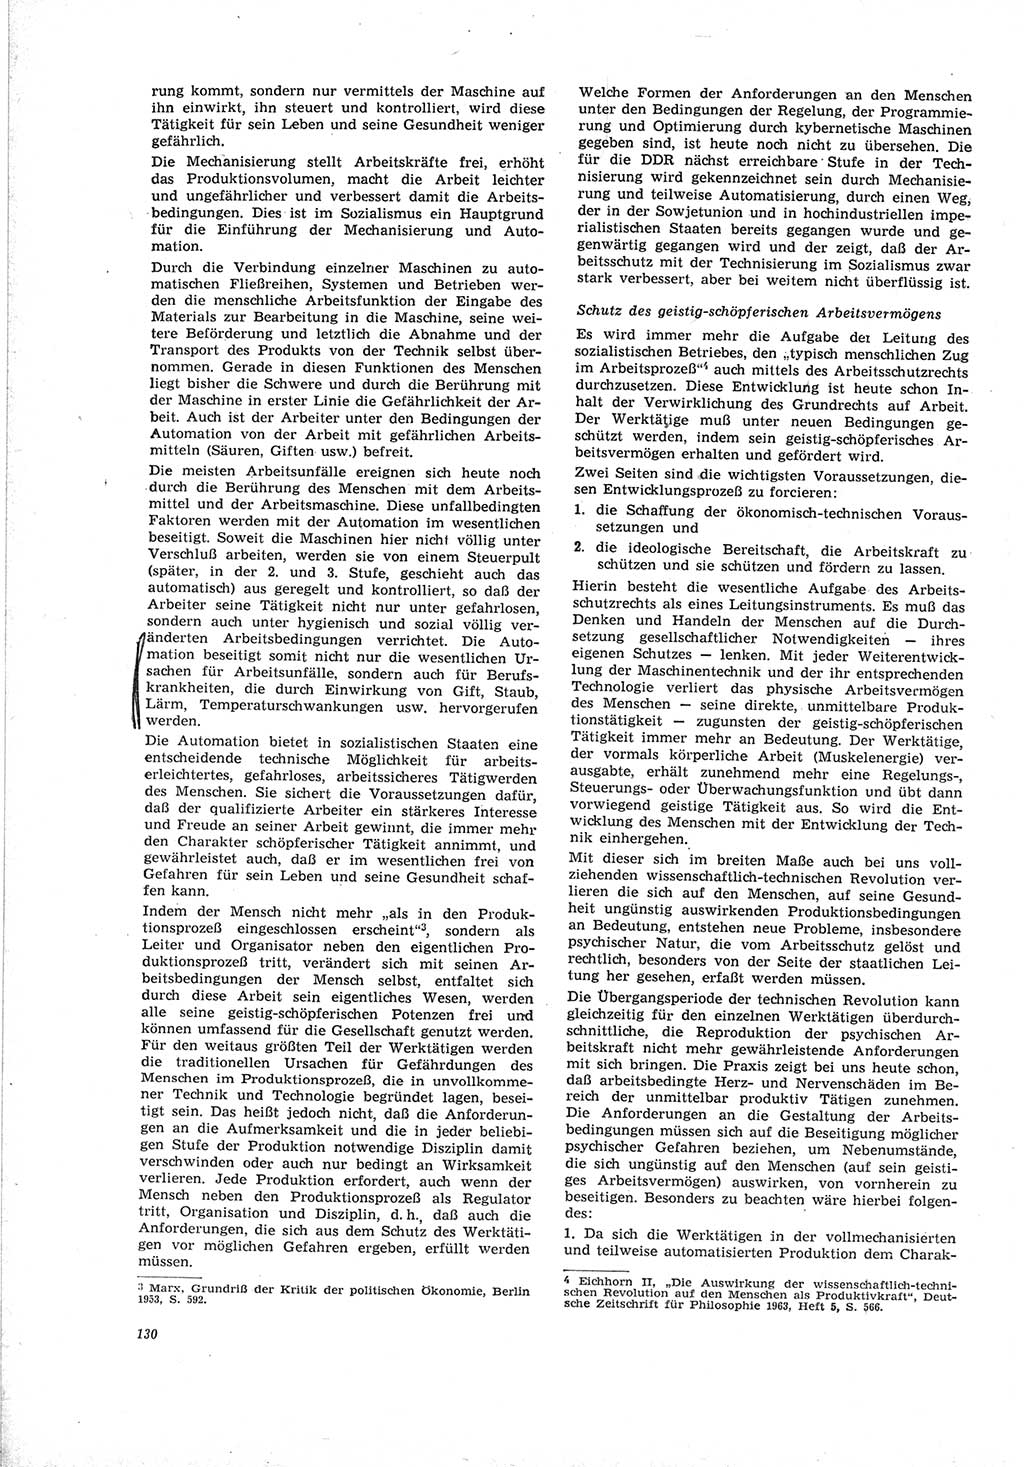 Neue Justiz (NJ), Zeitschrift für Recht und Rechtswissenschaft [Deutsche Demokratische Republik (DDR)], 19. Jahrgang 1965, Seite 130 (NJ DDR 1965, S. 130)